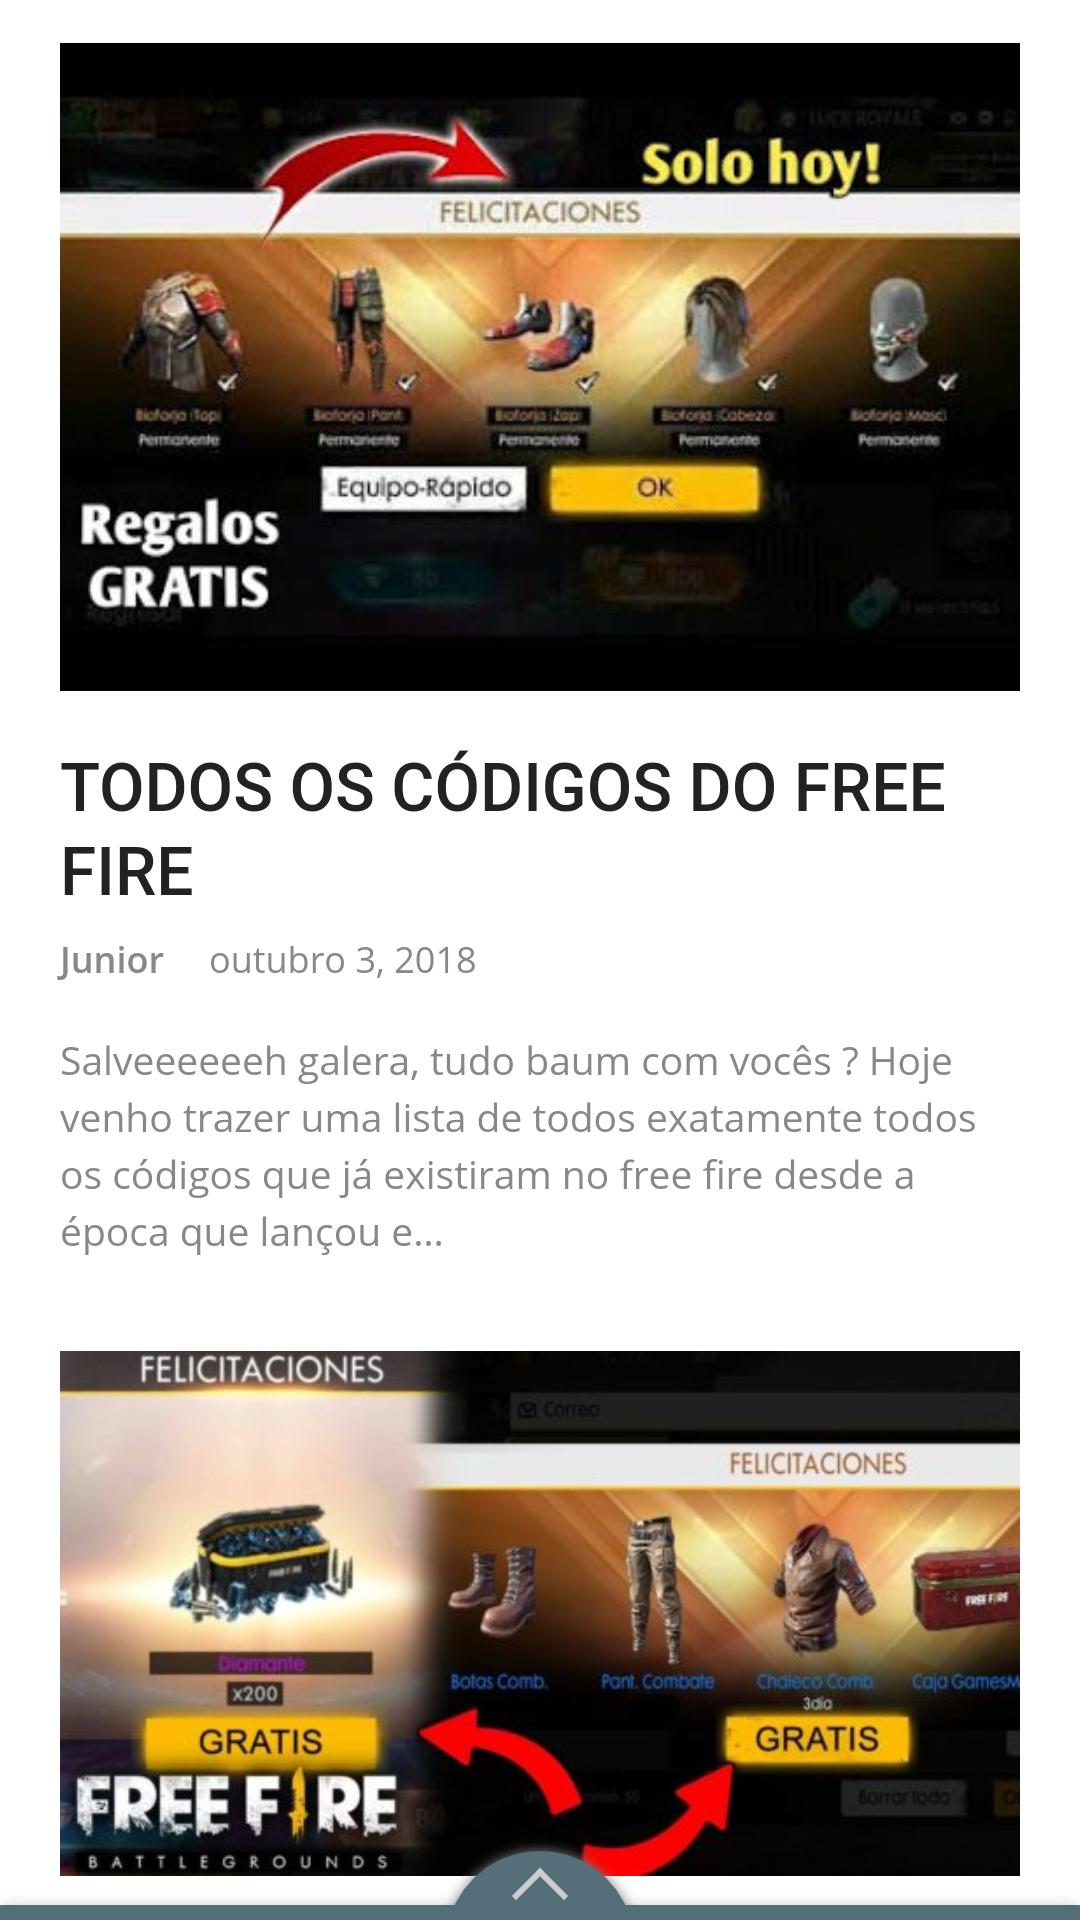 Hack Free Fire Gerador De Diamantes 2018 For Ios ... - 